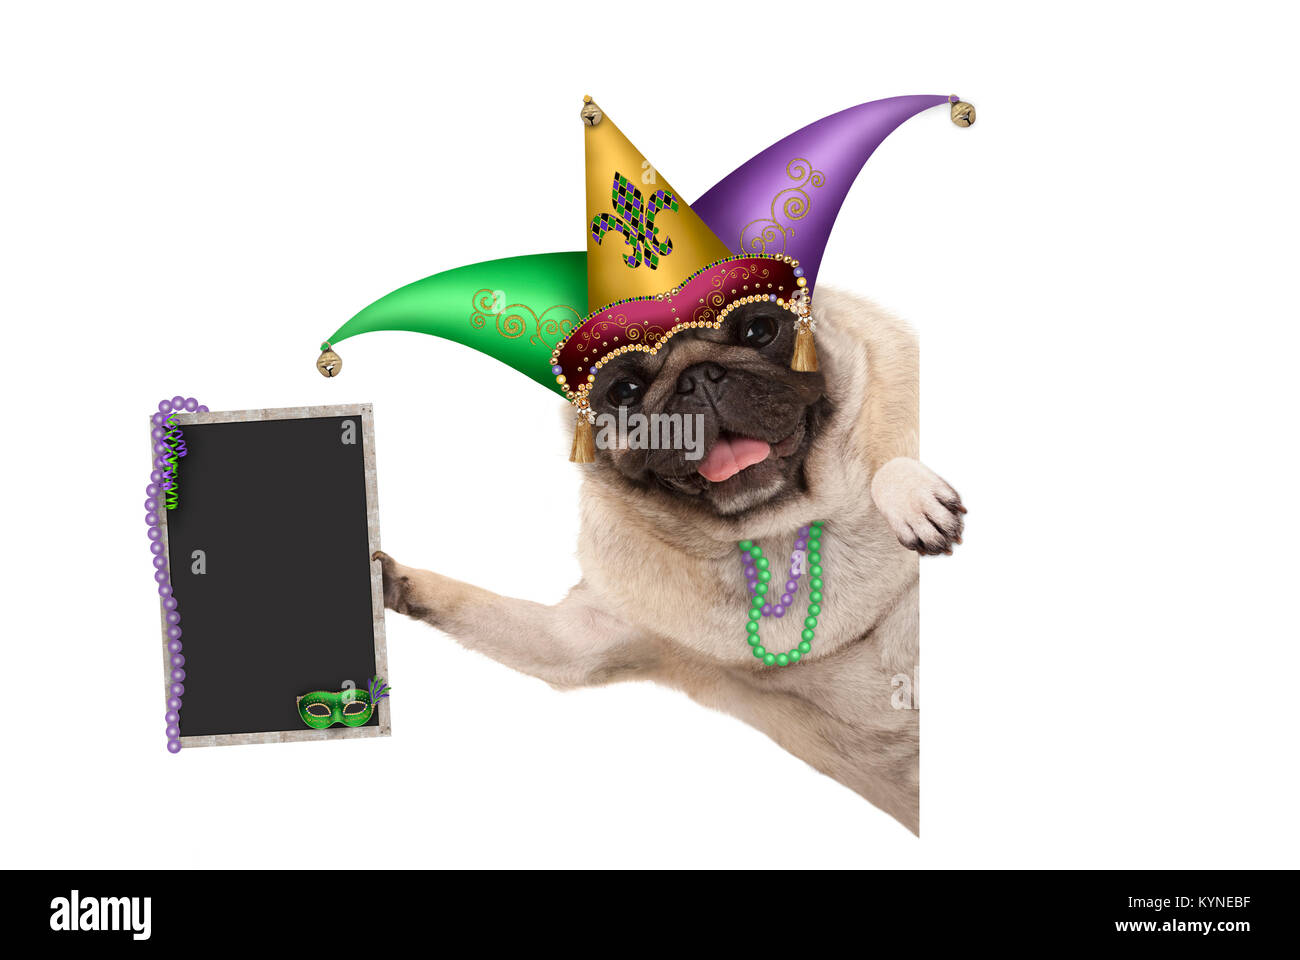 Mardi Gras carnival pug dog con la harlequin jester hat, maschera veneziana e decorate blackboard segno, isolati su sfondo bianco Foto Stock